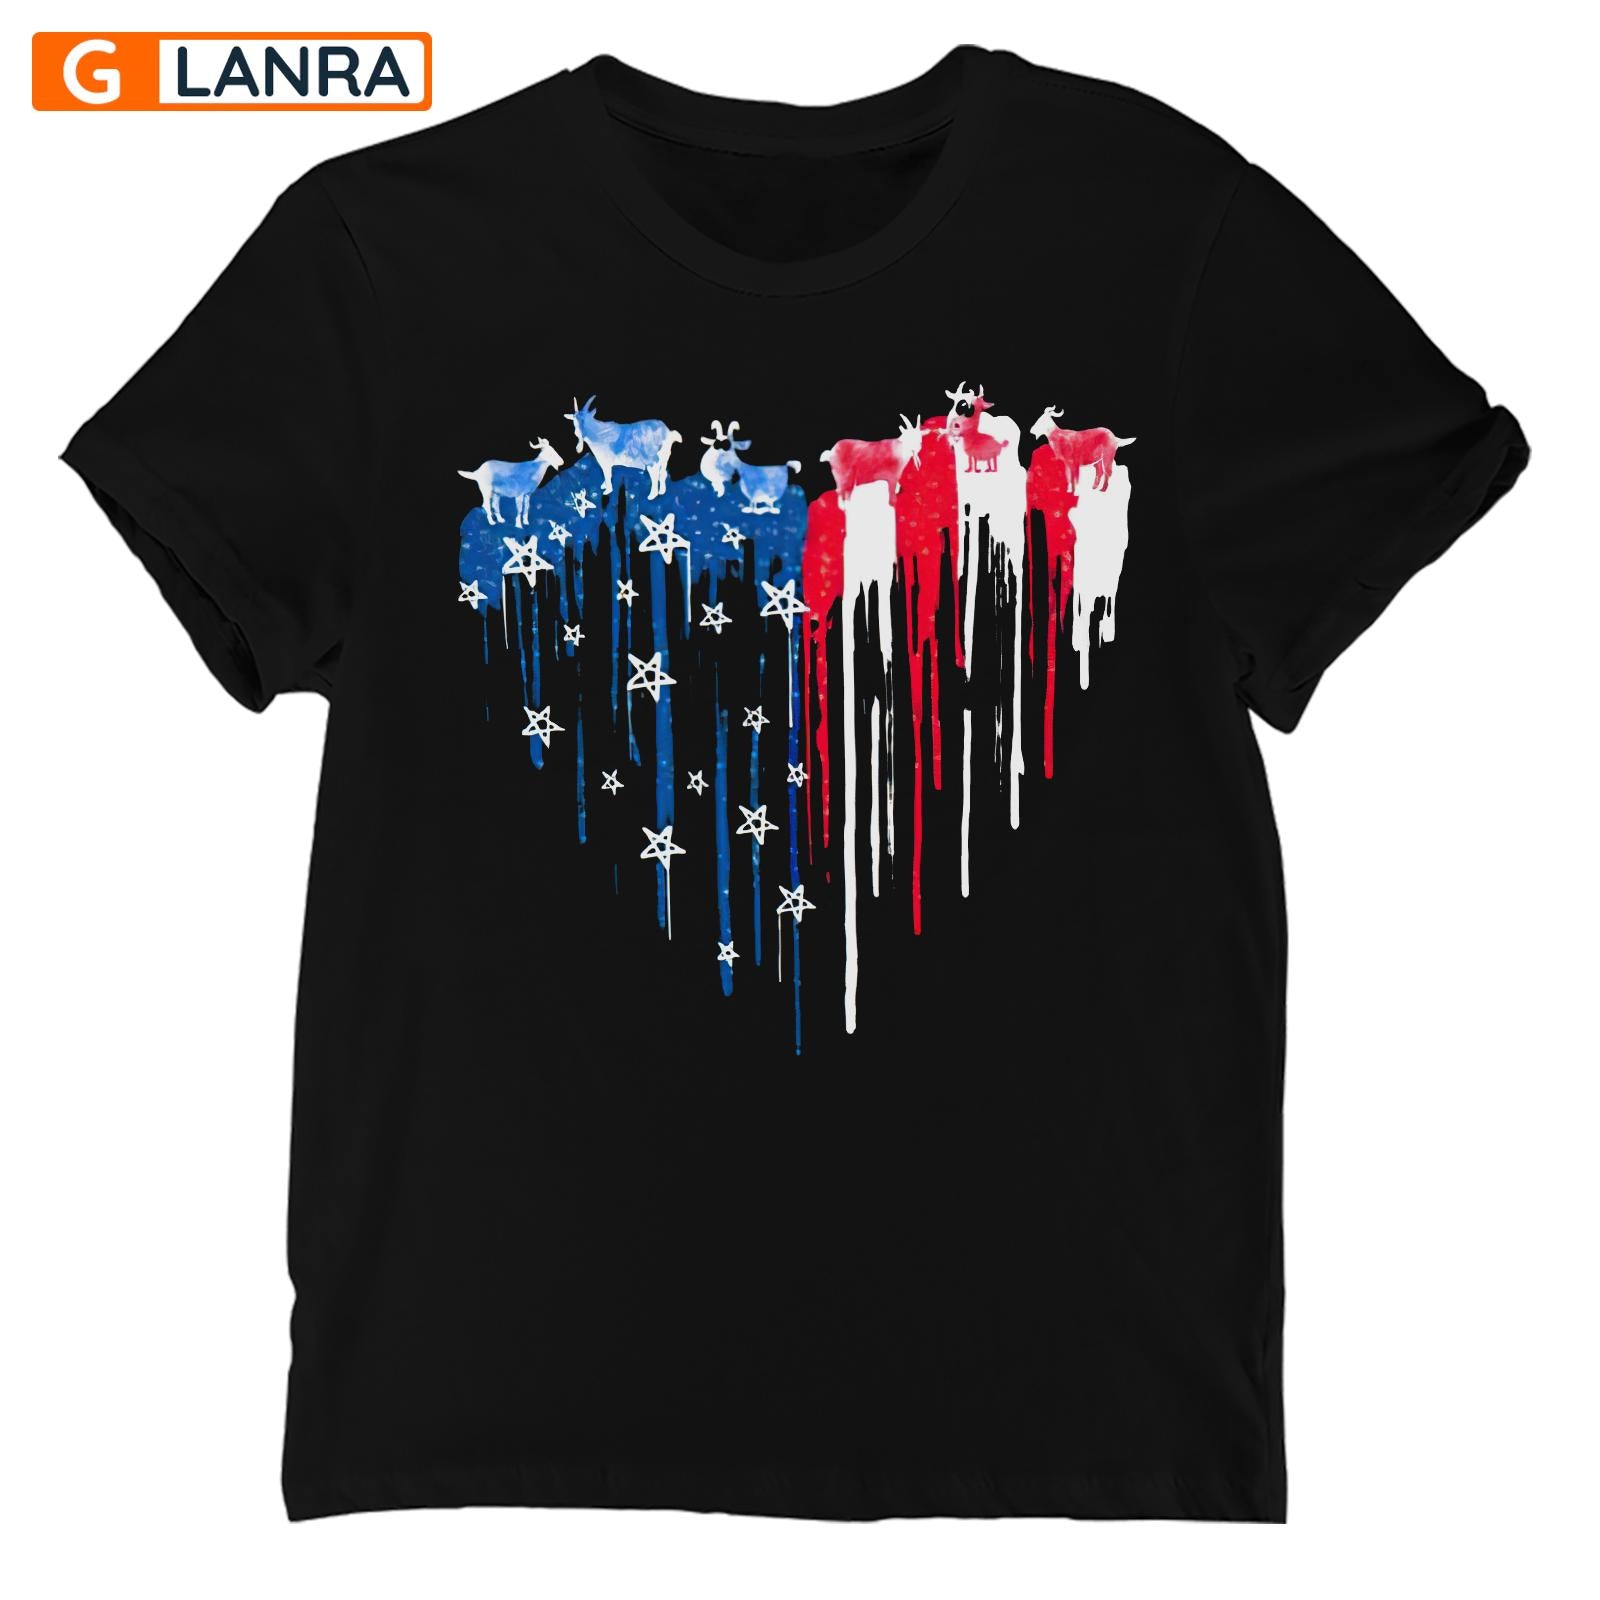 American Flag Goat Heart Shirt, Goat Shirt, American Goat Farm Shirt, American Flag Shirt, Independence Day Shirt, T-Shirt, Tee